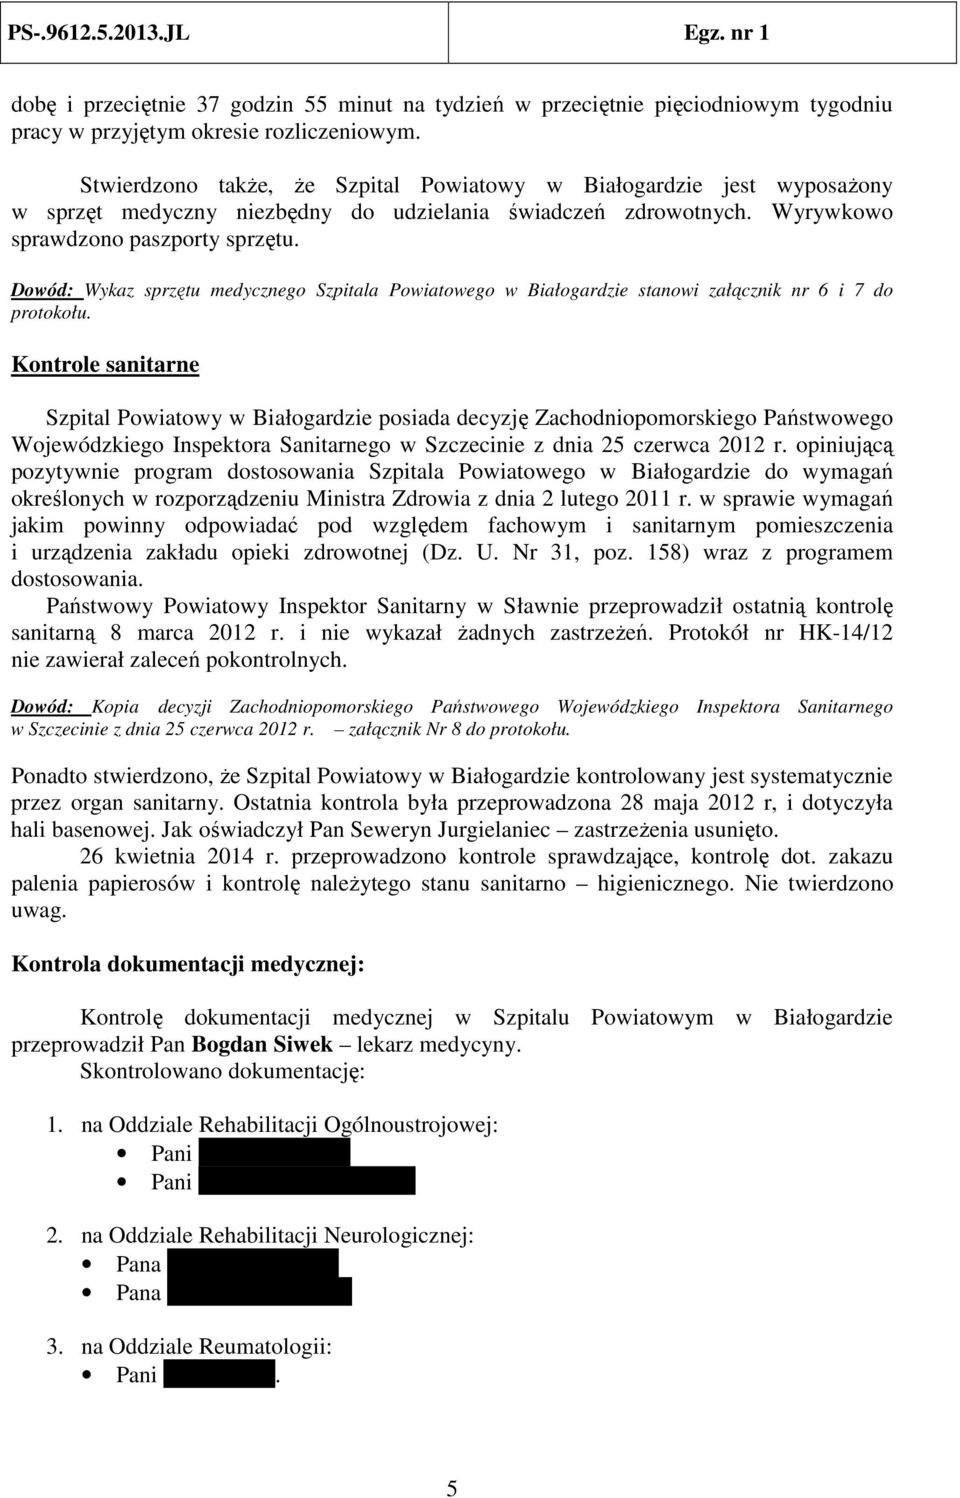 Dowód: Wykaz sprzętu medycznego Szpitala Powiatowego w Białogardzie stanowi załącznik nr 6 i 7 do protokołu.